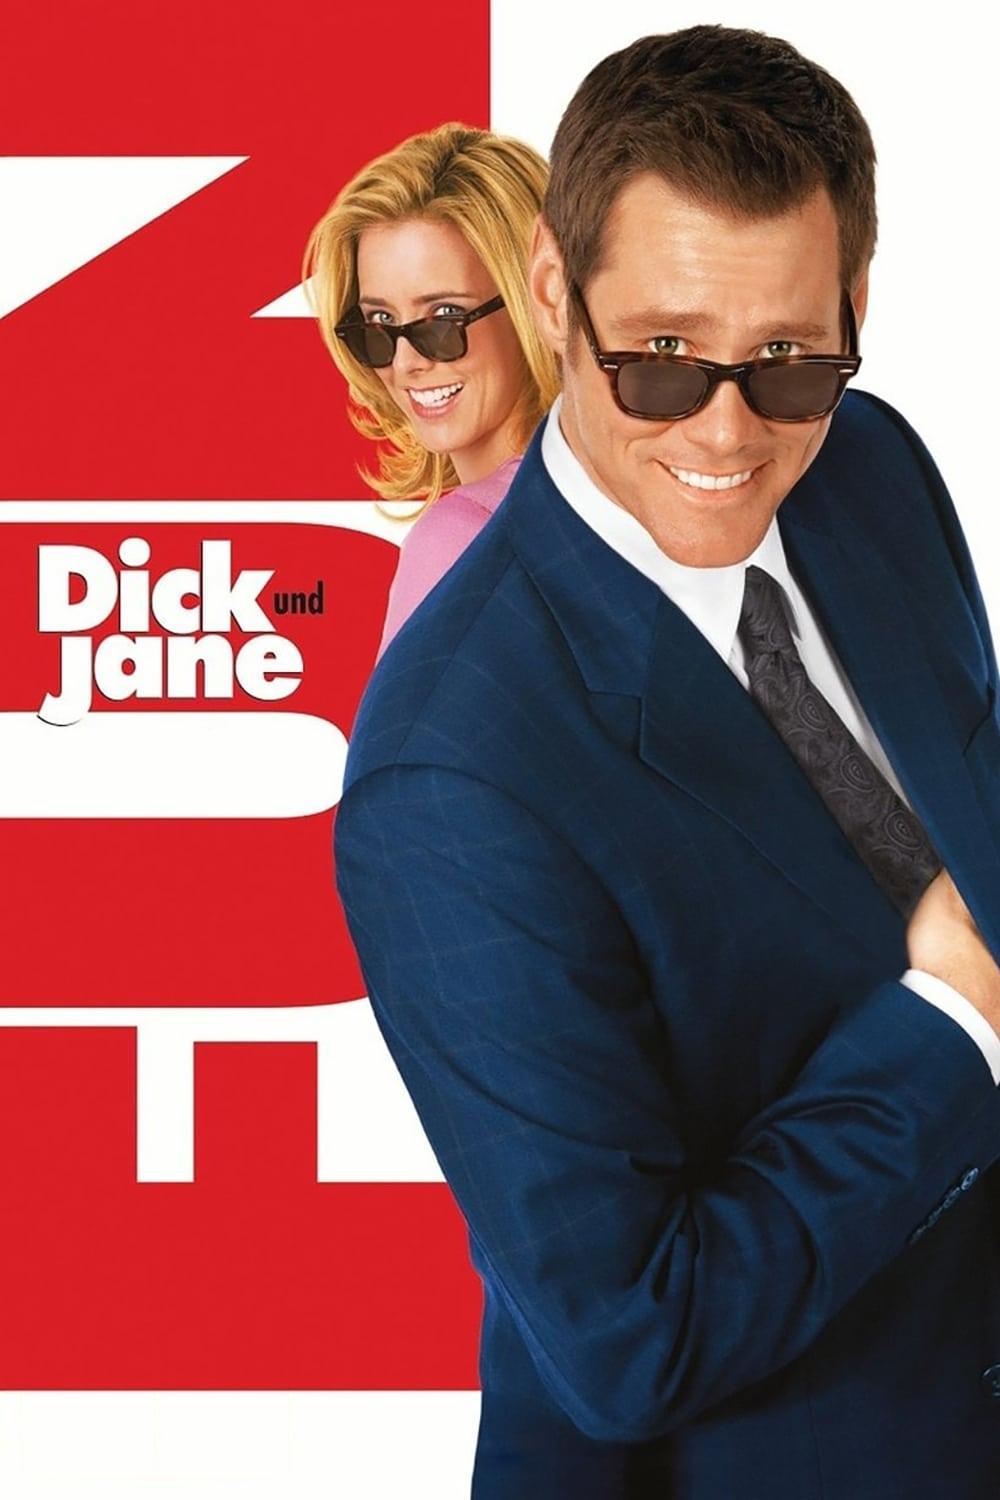 Dick und Jane poster